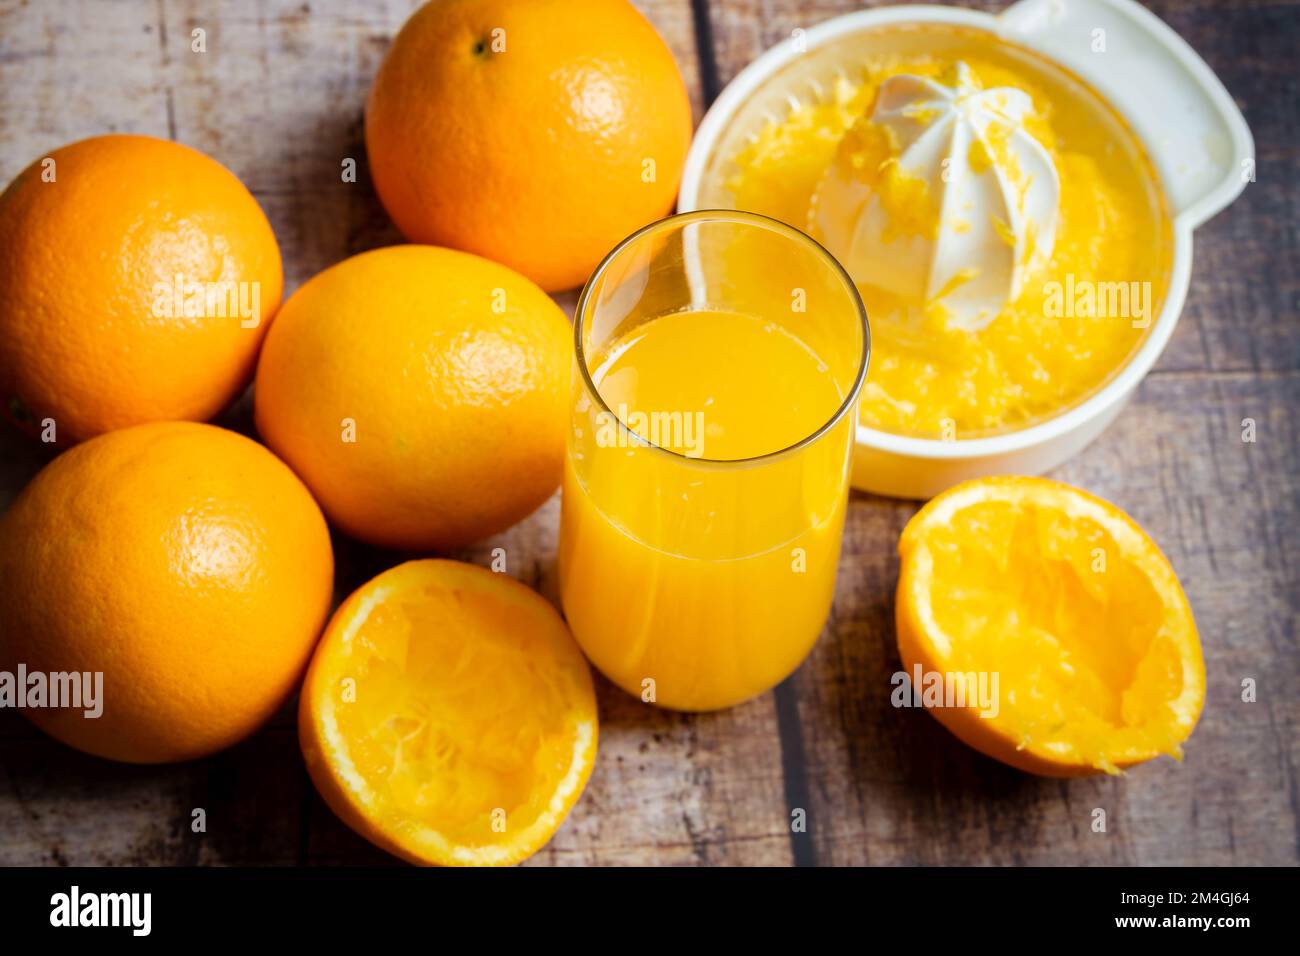 spremuta d'arancia fresca in un bicchiere su uno sfondo di legno Foto Stock